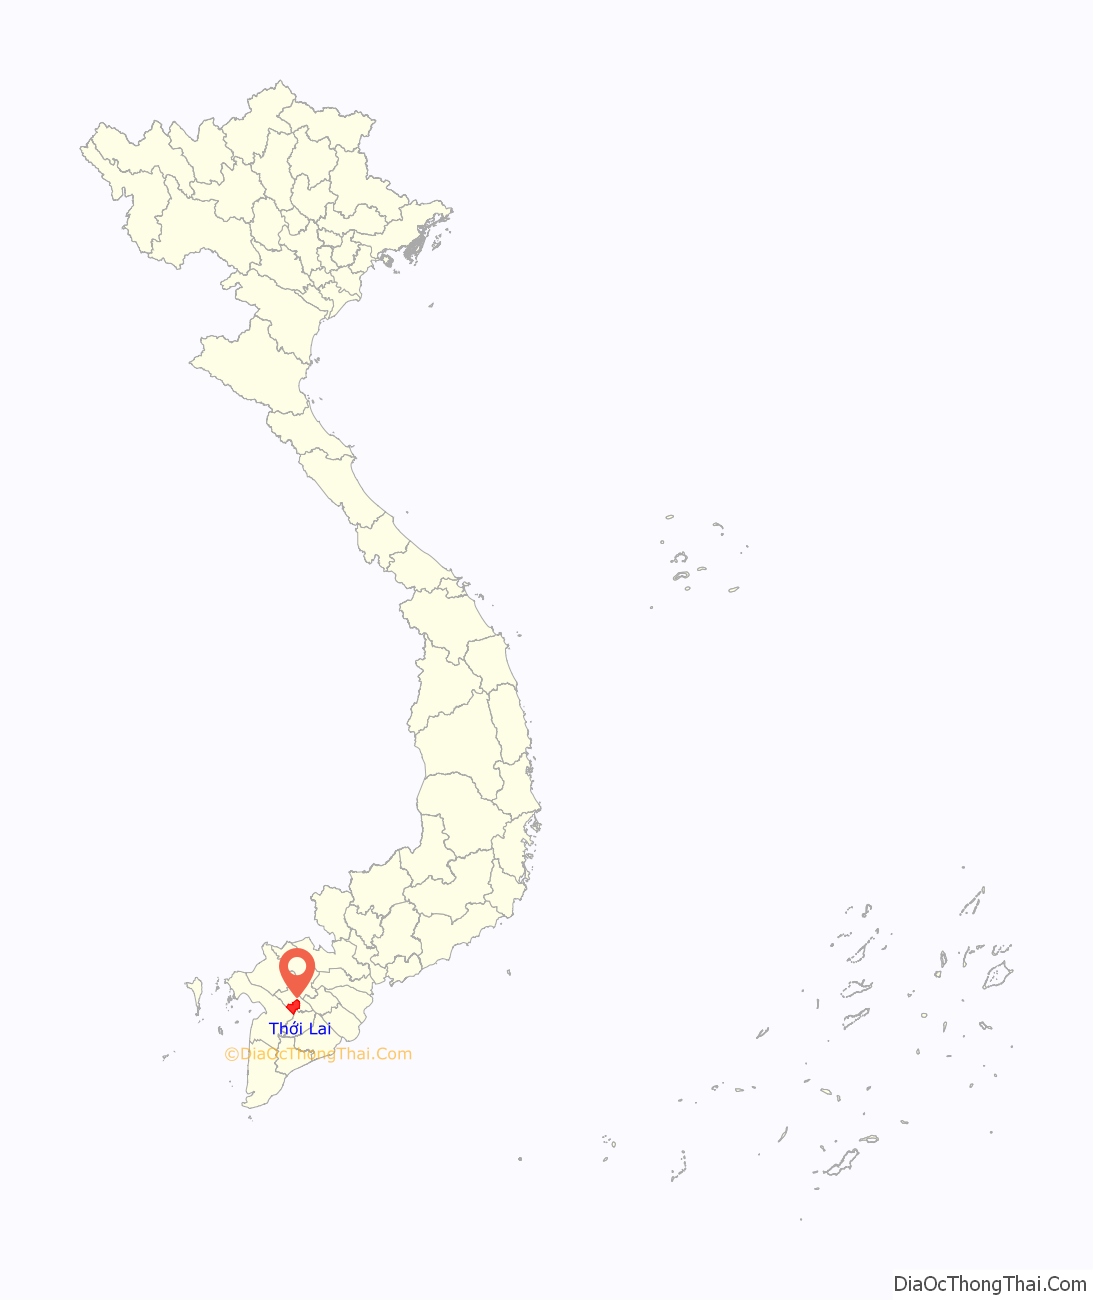 Huyện Thới Lai ở đâu? Vị trí của huyện Thới Lai